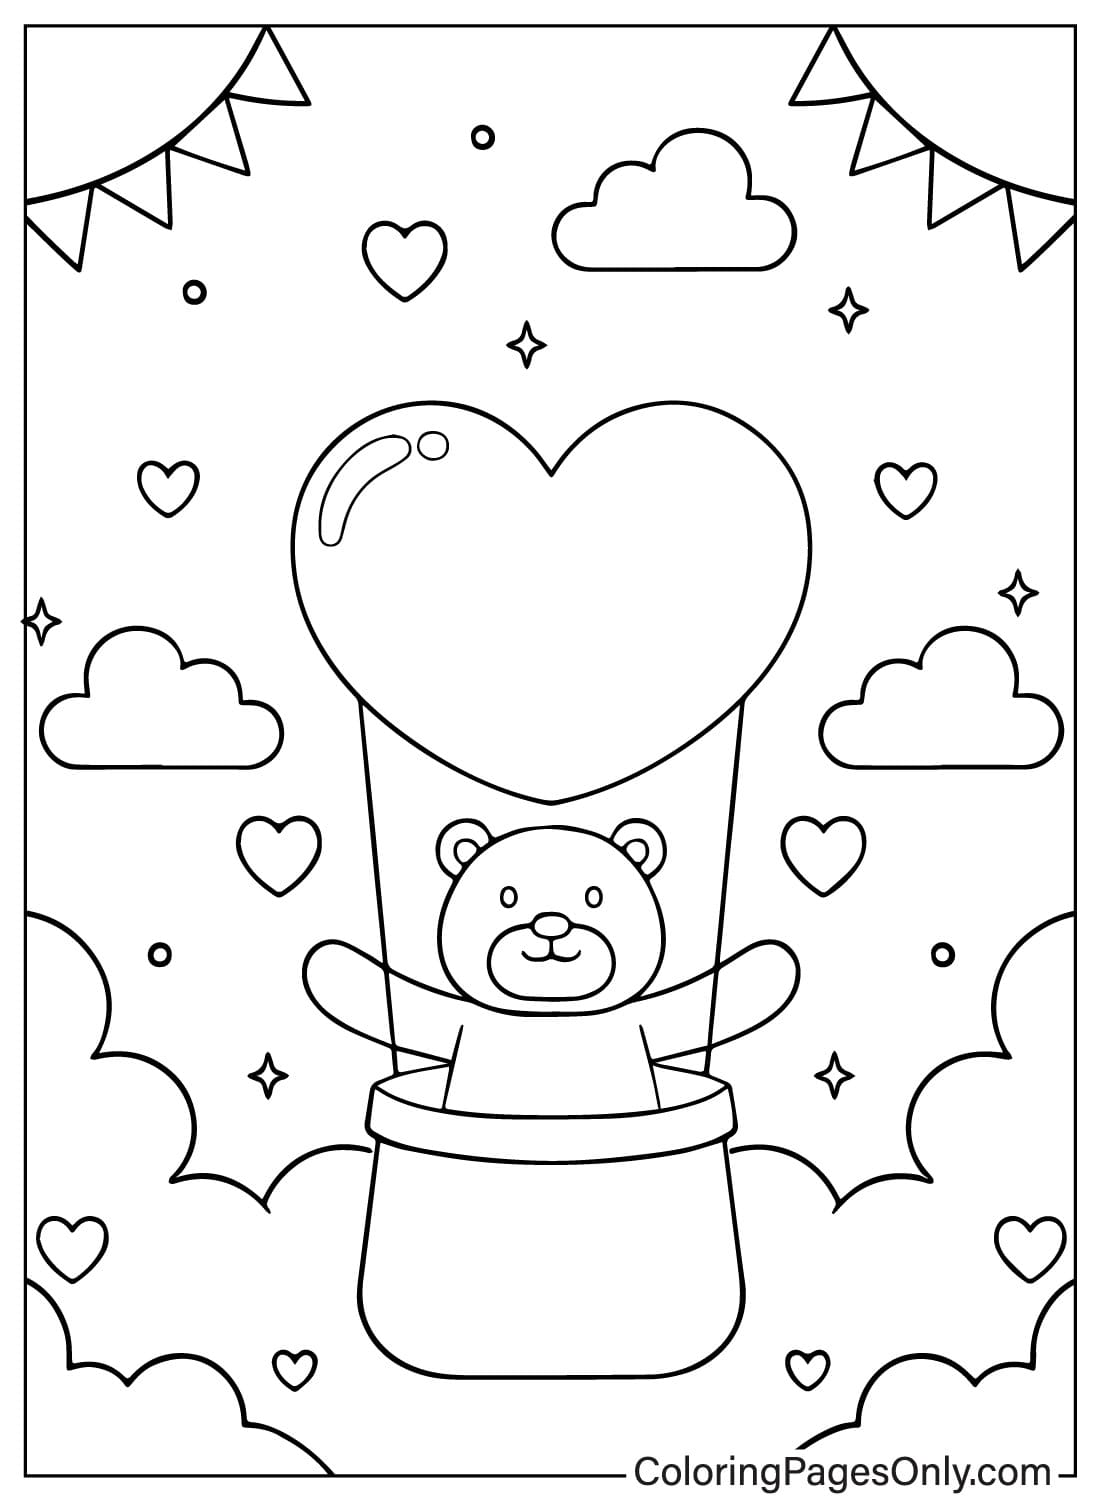 Página para colorear de osito de peluche gratis de Teddy Bear